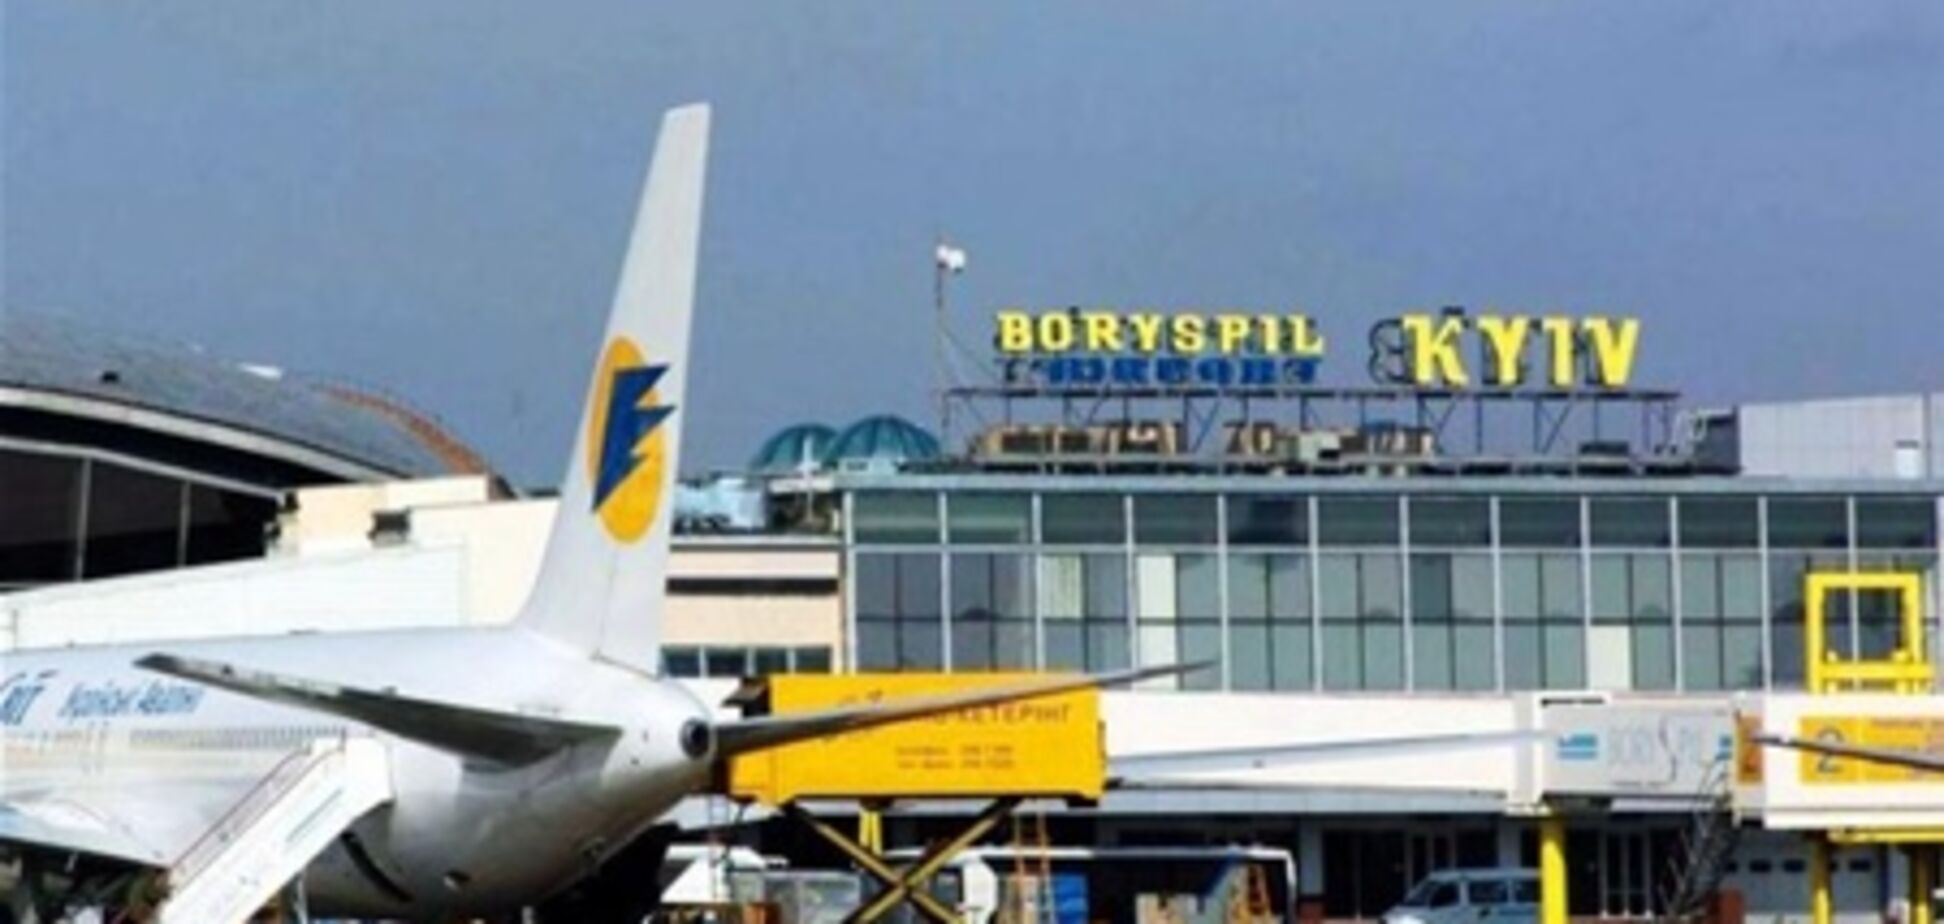 Из-за забастовки Lufthansa в Борисполе отменены 8 рейсов